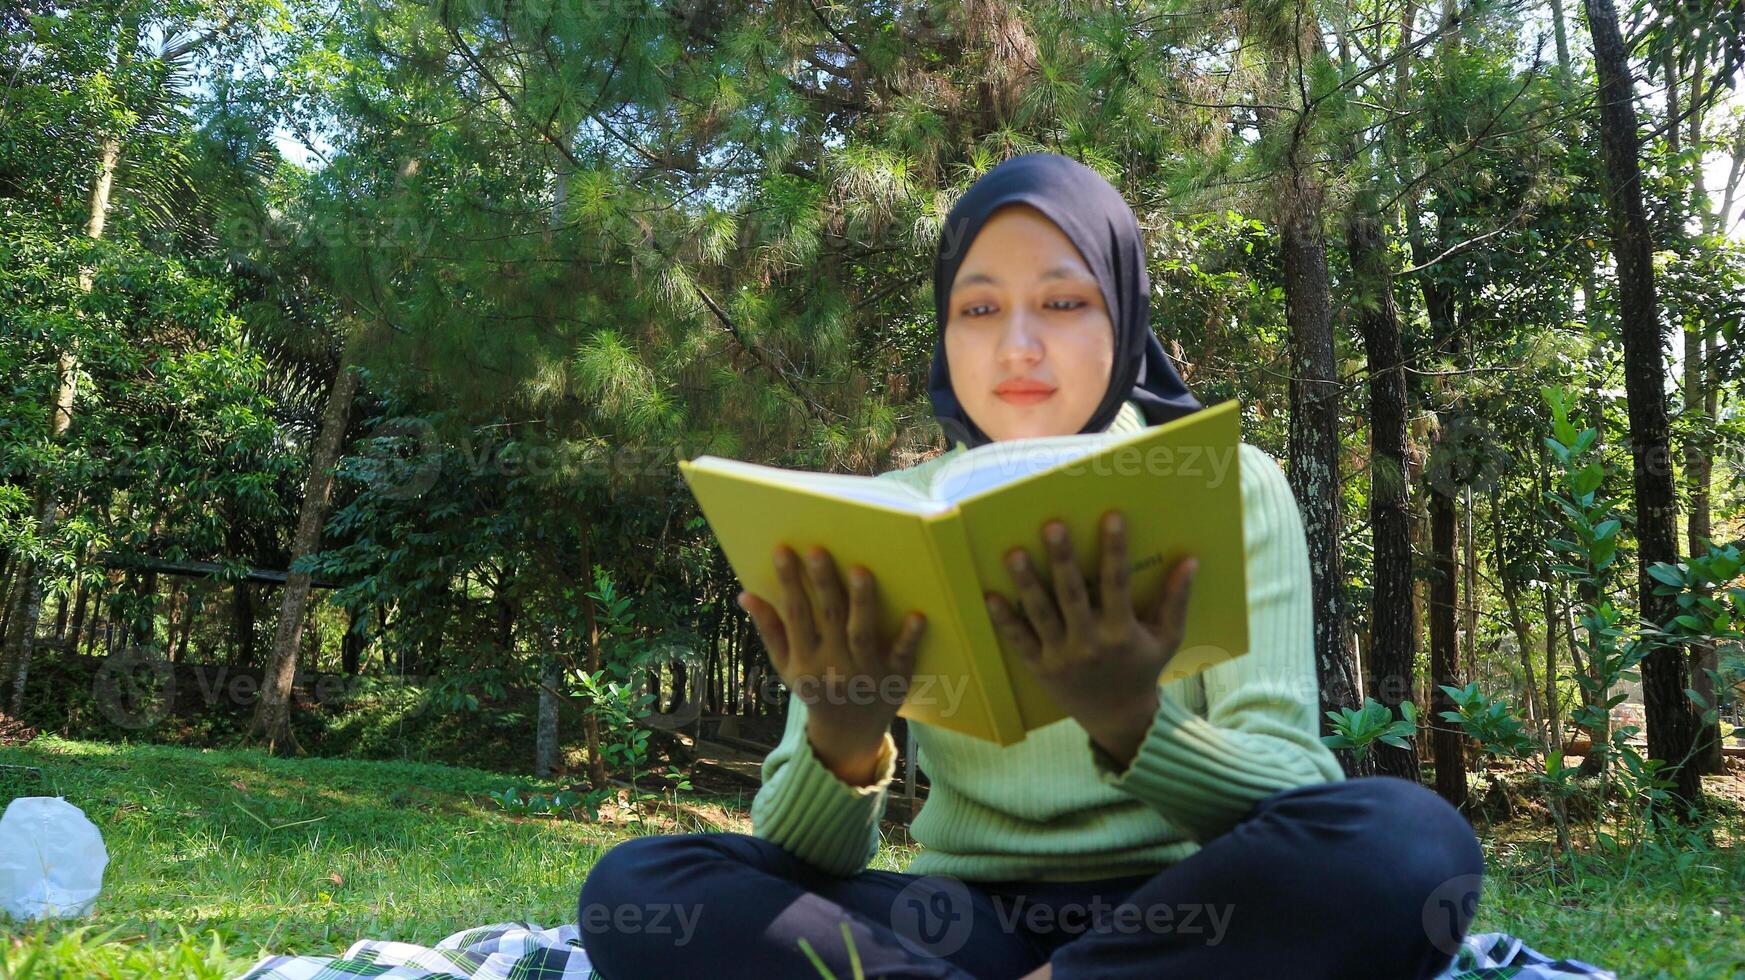 détendu musulman femme profiter fin de semaine à parc, séance sur herbe et en train de lire livre, vide espace photo